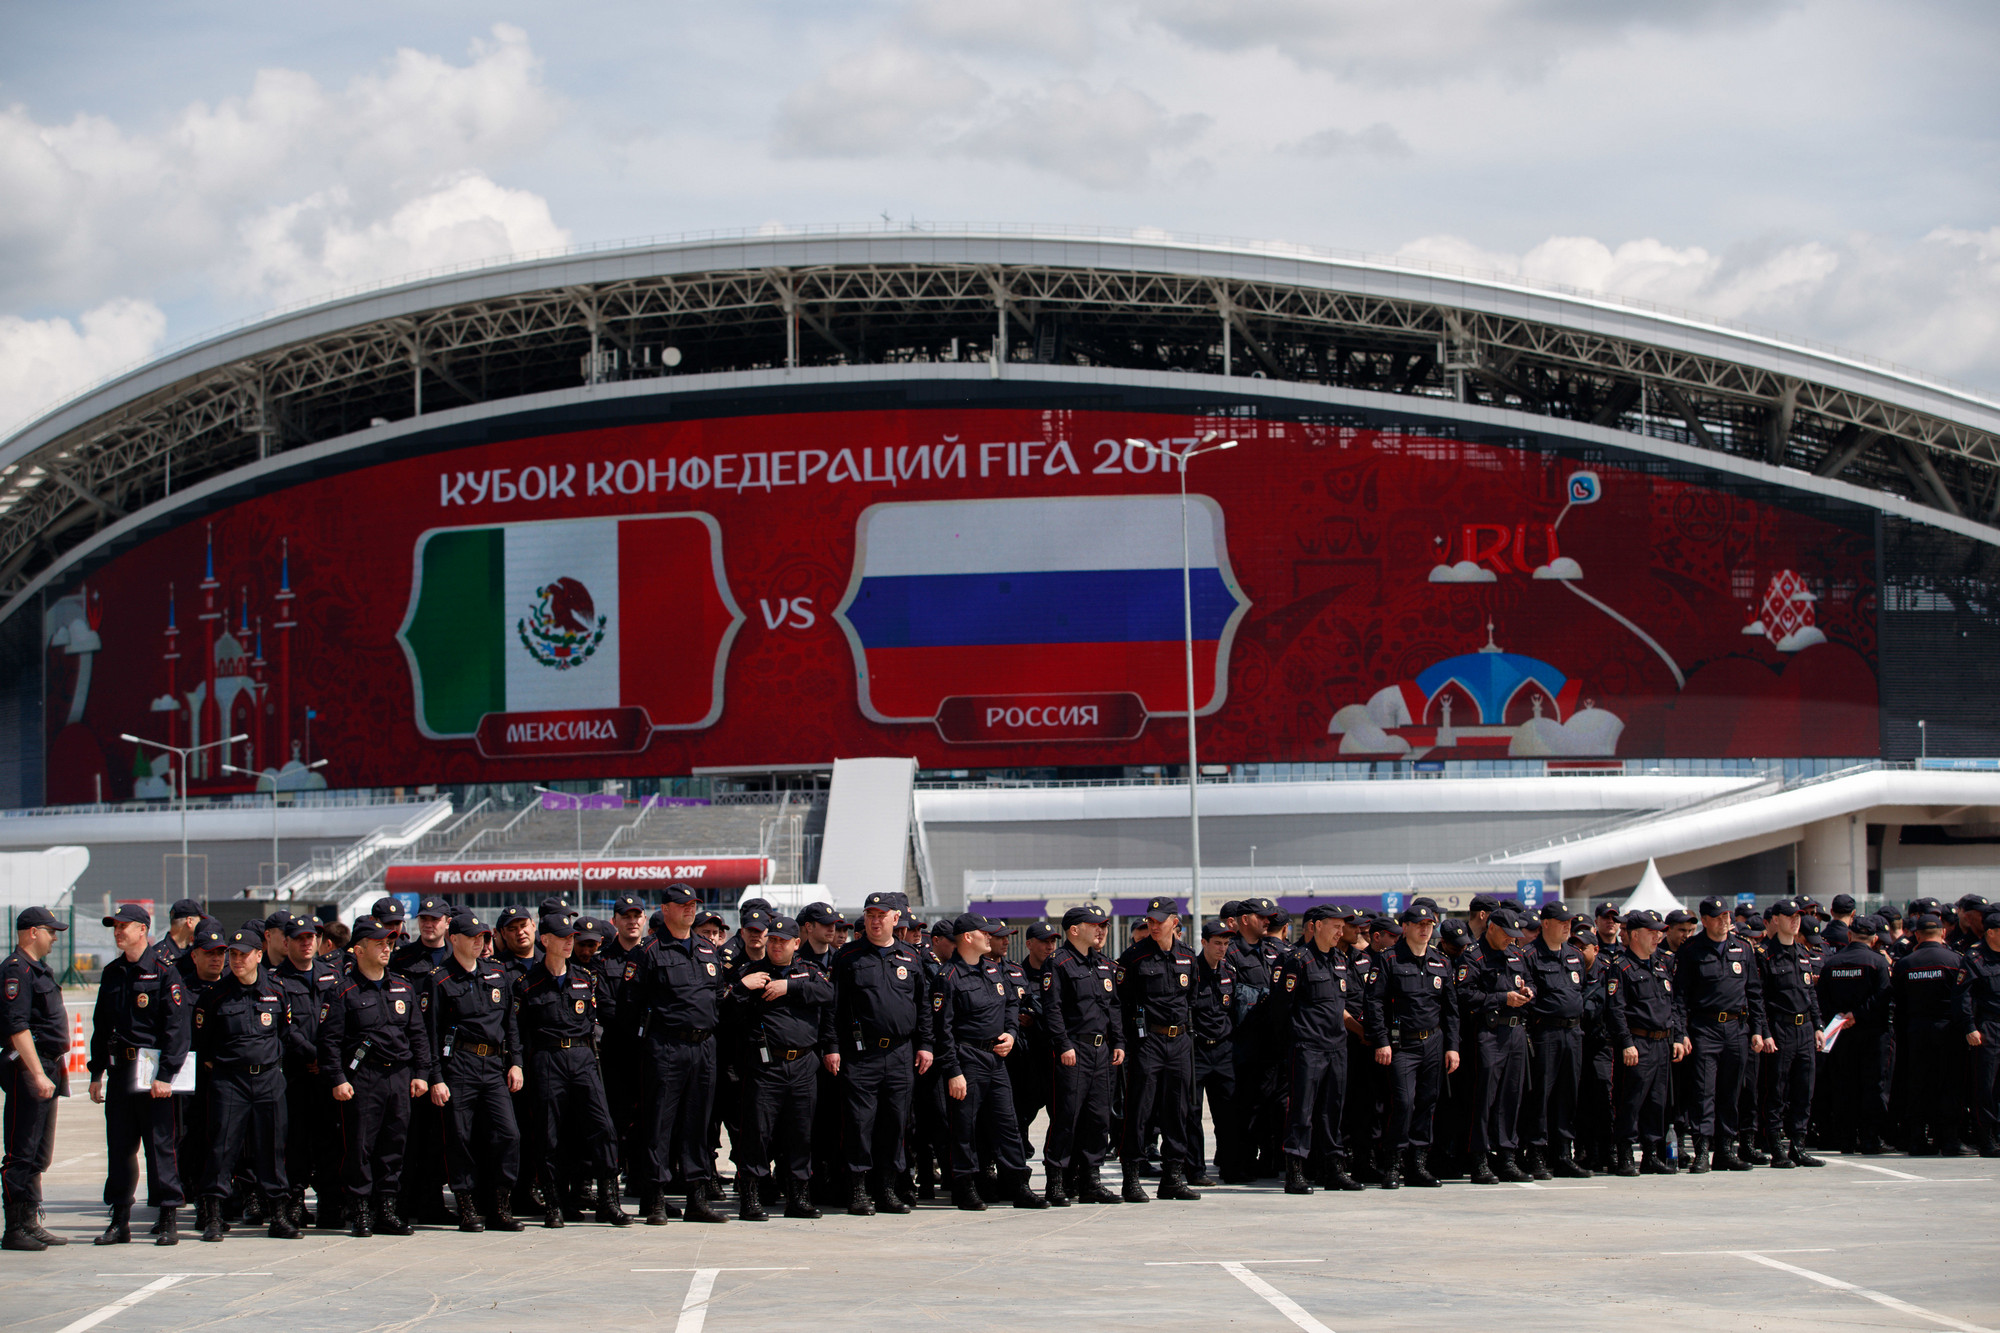 Матч: Мексика &mdash; Россия

Стадион: &laquo;Казань Арена&raquo;

Посещаемость:  41&nbsp;585

Вместимость: 41&nbsp;585

Как и на матче Россия &mdash; Португалия, на игре Мексика &mdash; Россия меры безопасности были усилены
